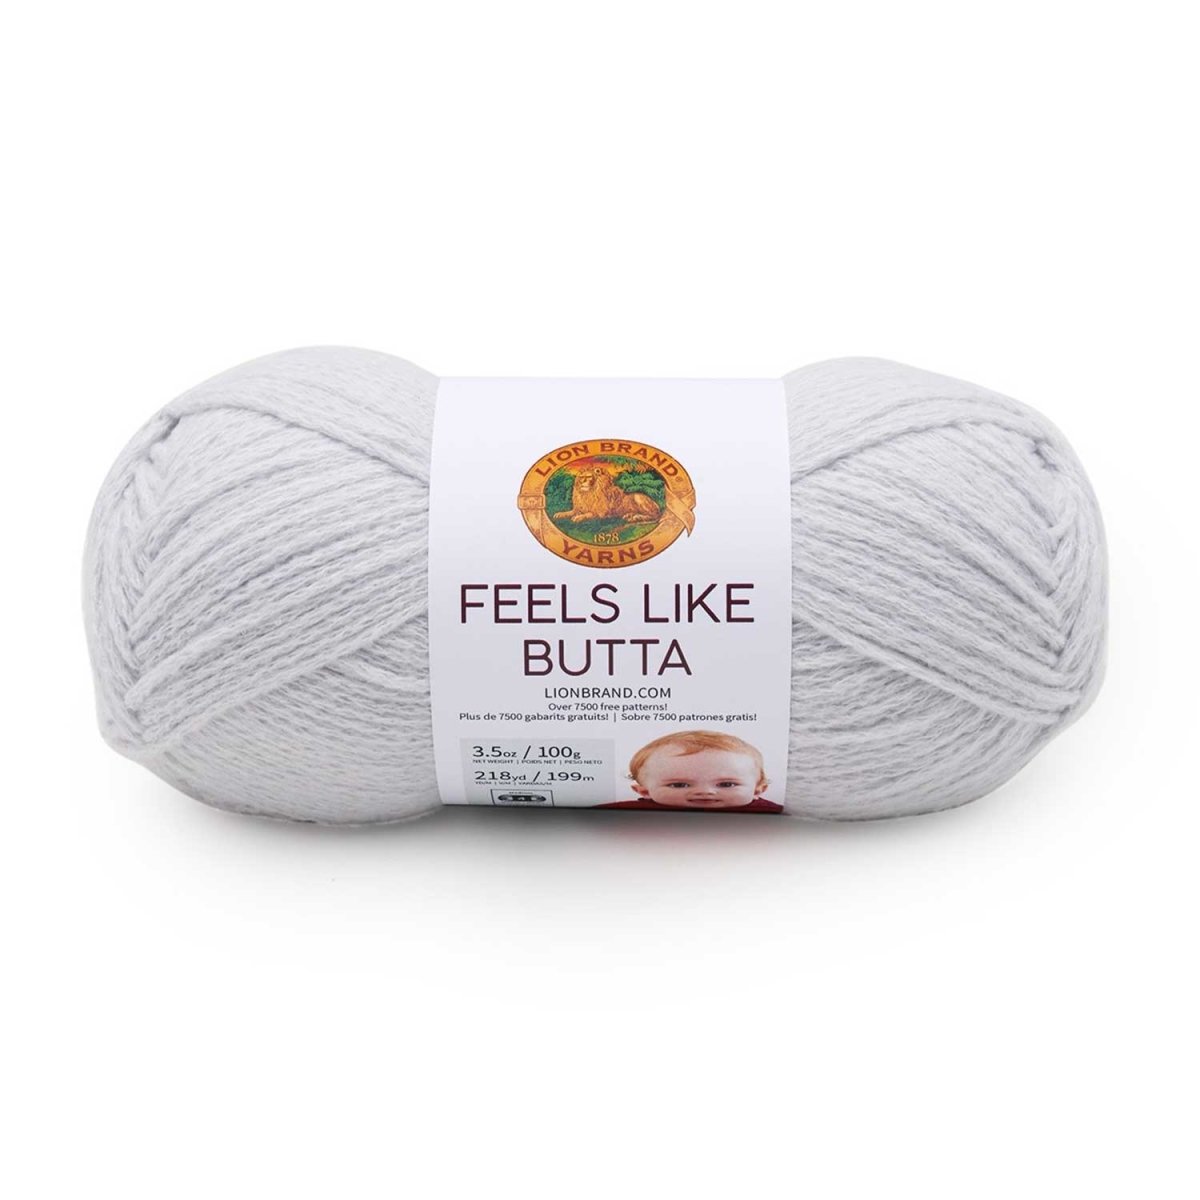 FEELS LIKE BUTTA - Crochetstores215-149